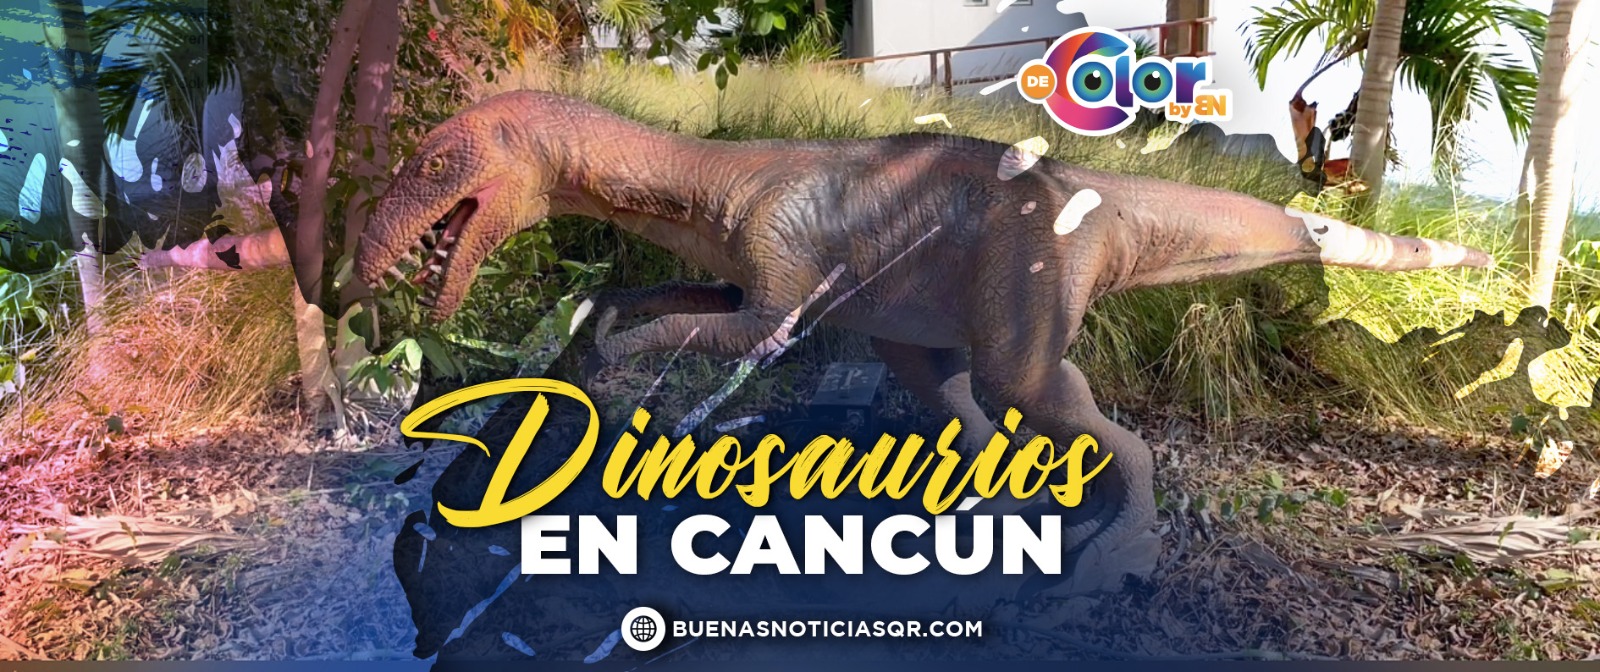 VIDEO: Dinosaurios llegan a Cancún; tienes que visitarlos